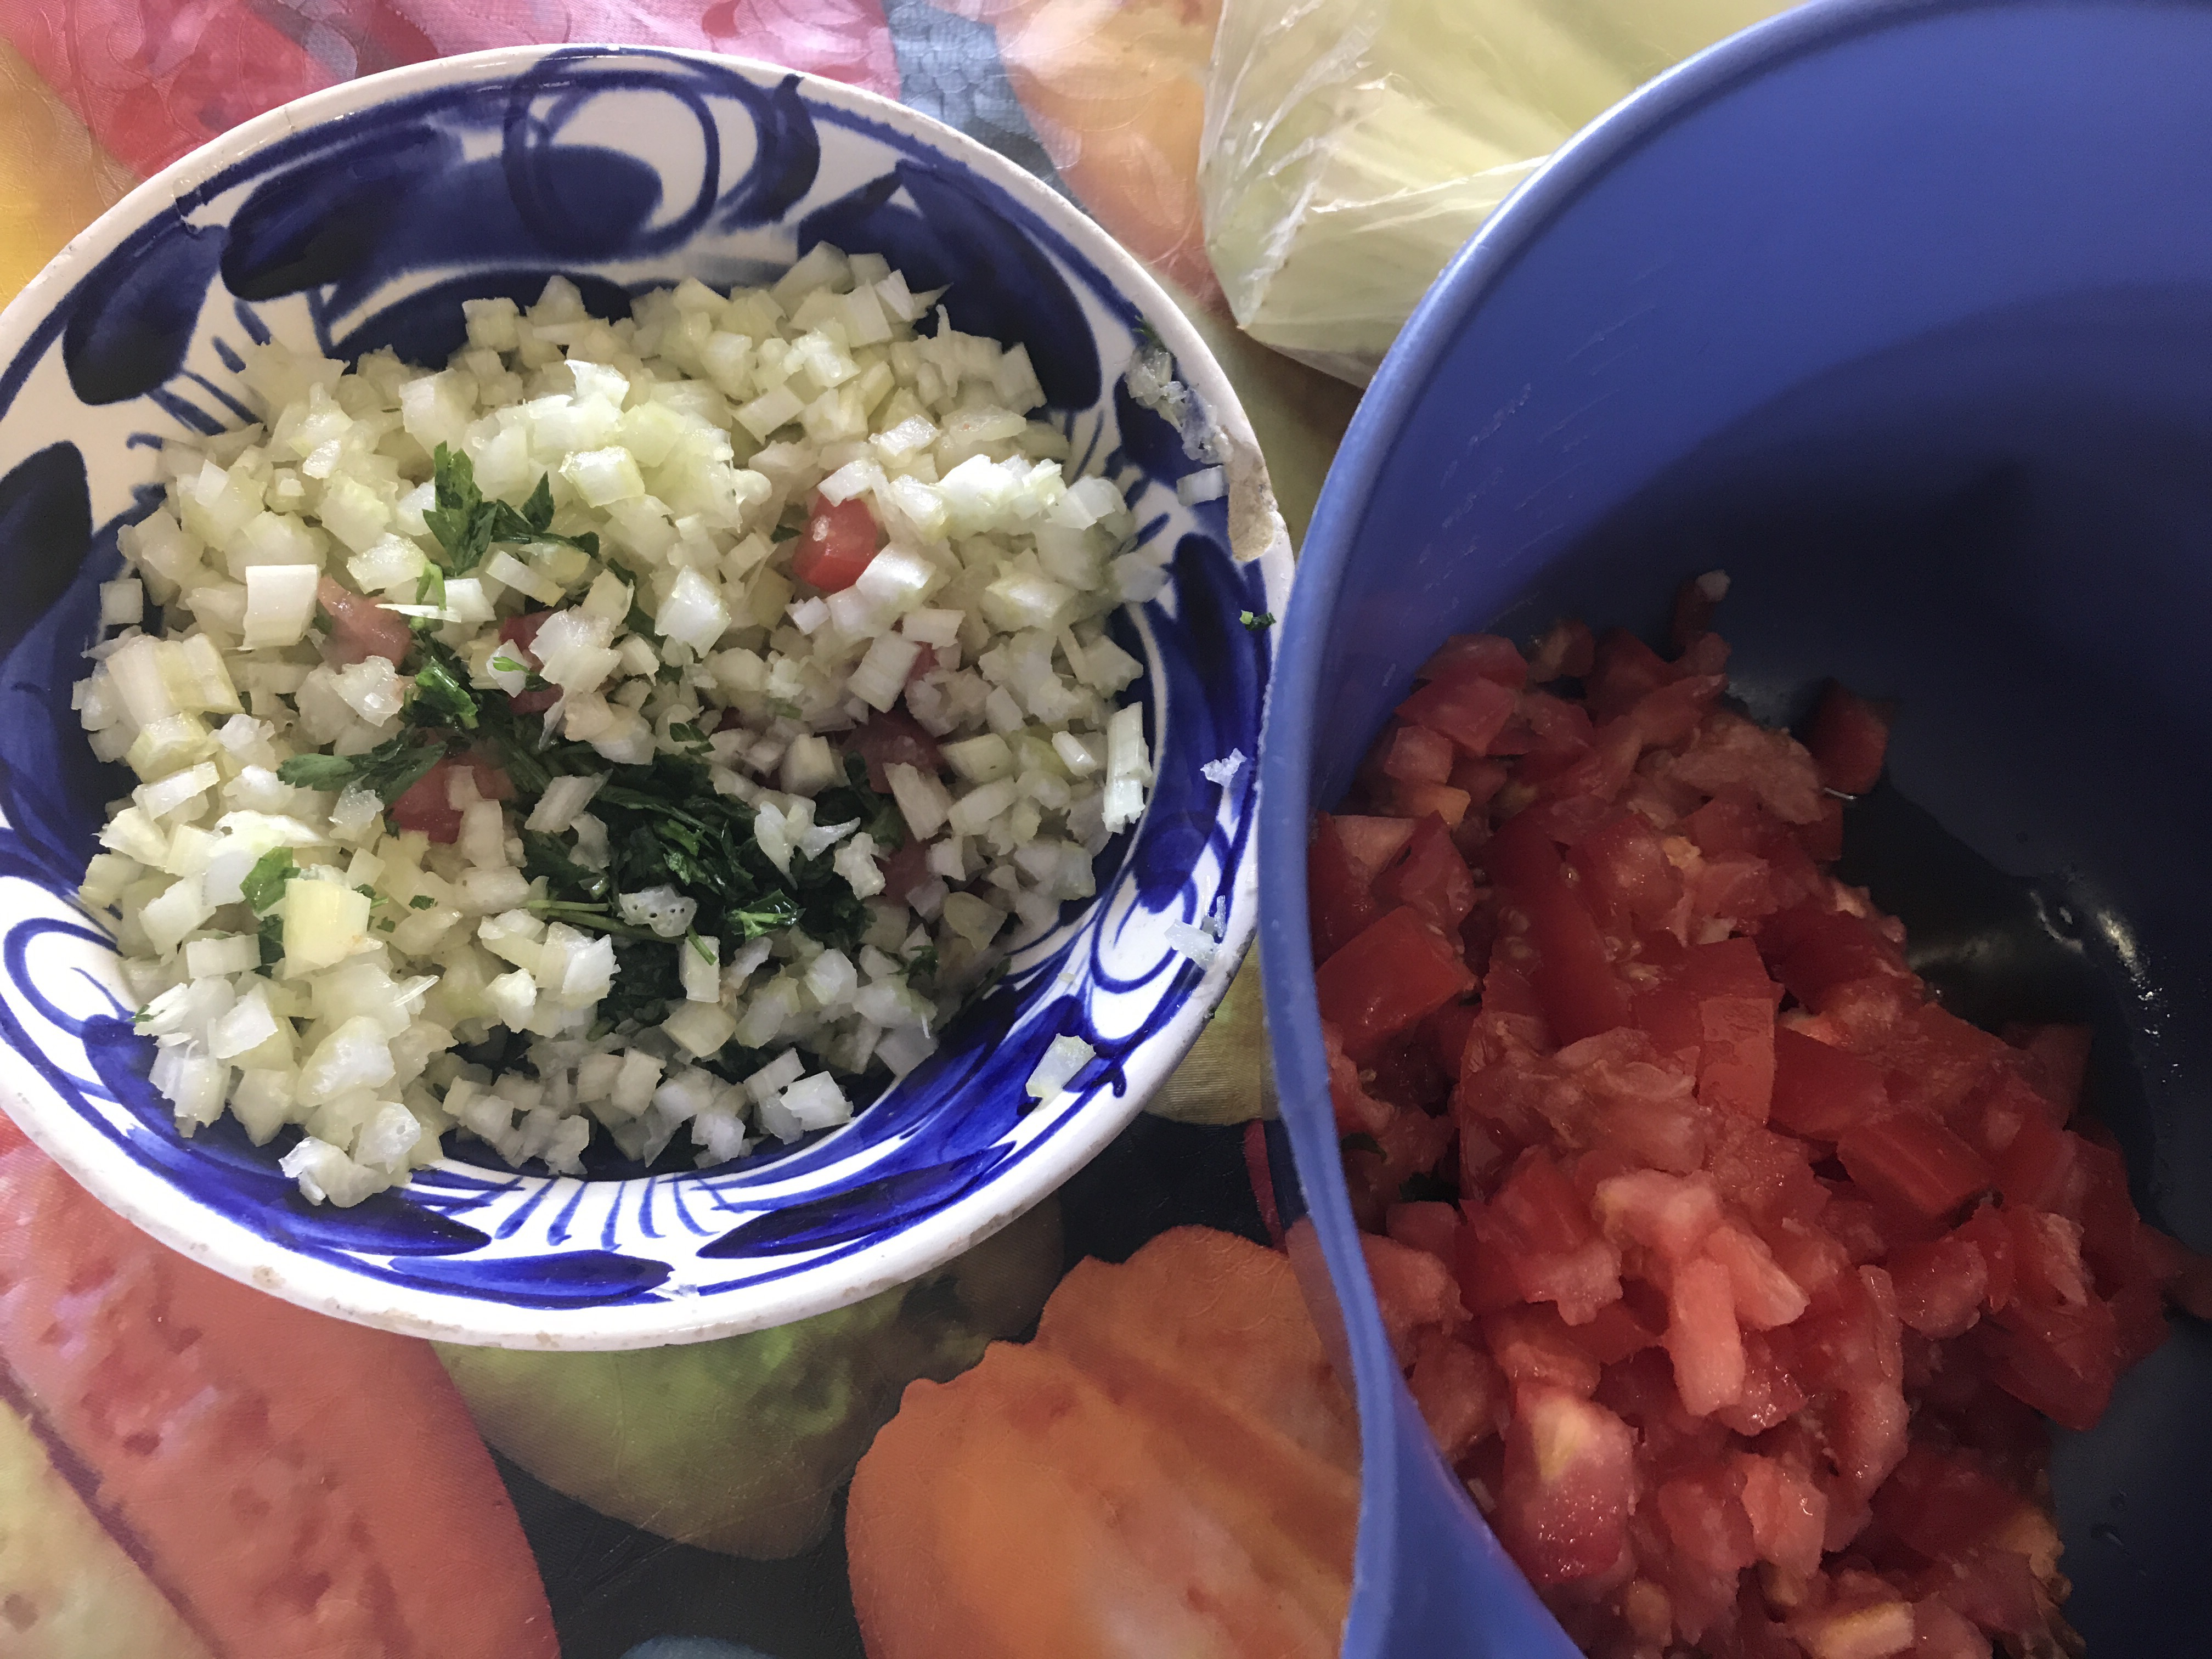 COCINA CASERA MEXICANA | Recetas de cocina casera. La ...